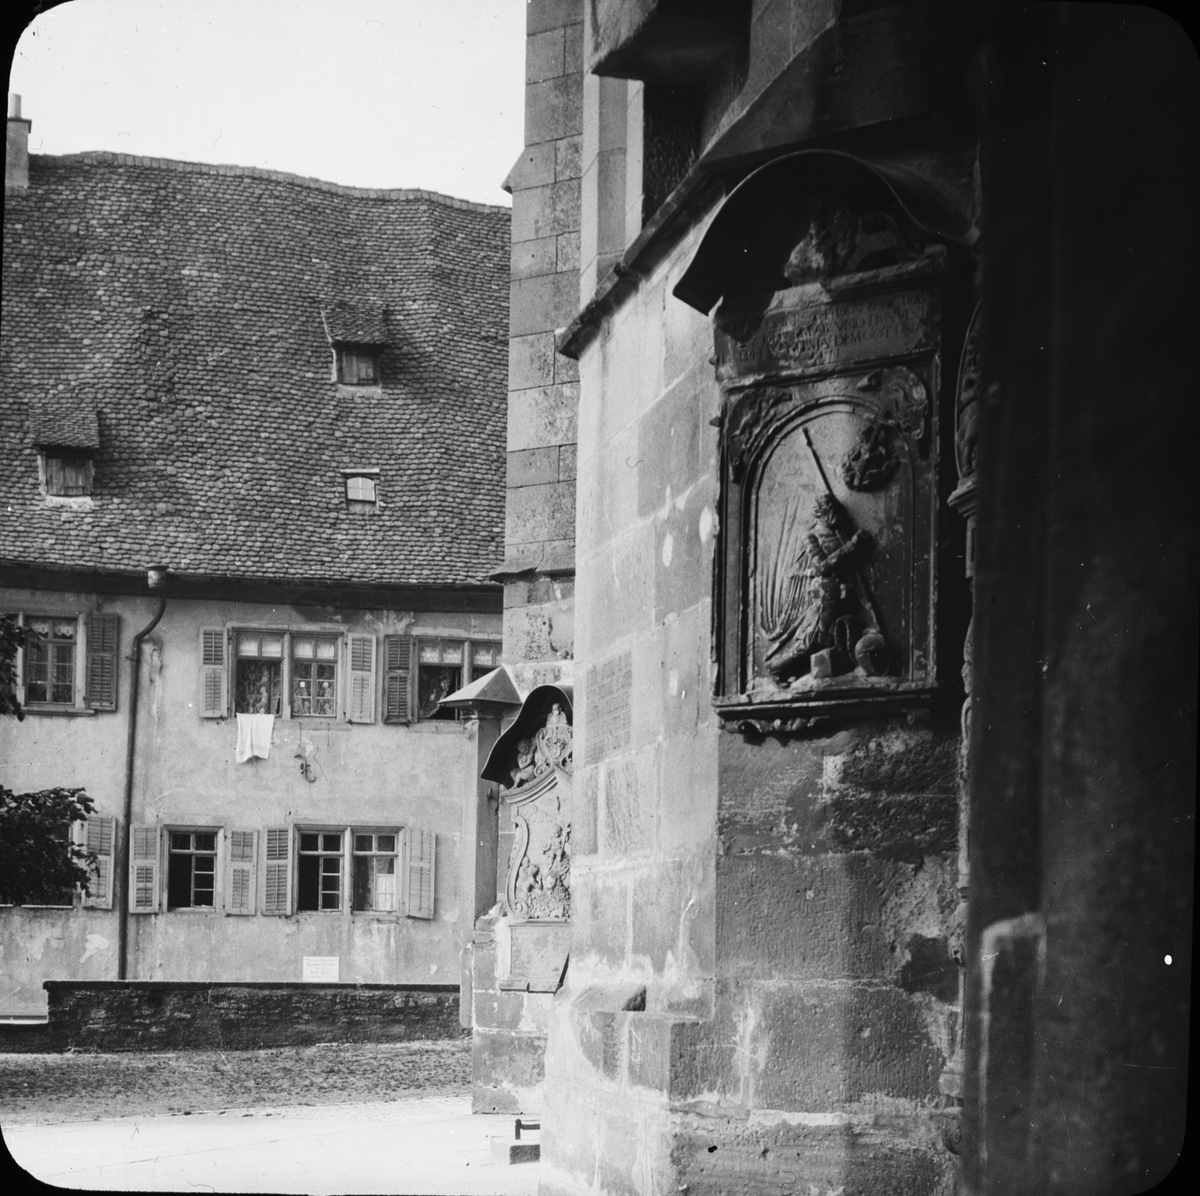 Skioptikonbild med motiv av kirche St. Michael.
Bilden har förvarats i kartong märkt: Resan 1911. Schwäbisch Hall 9. XVI. Text på bild: "St. Michaeliska".